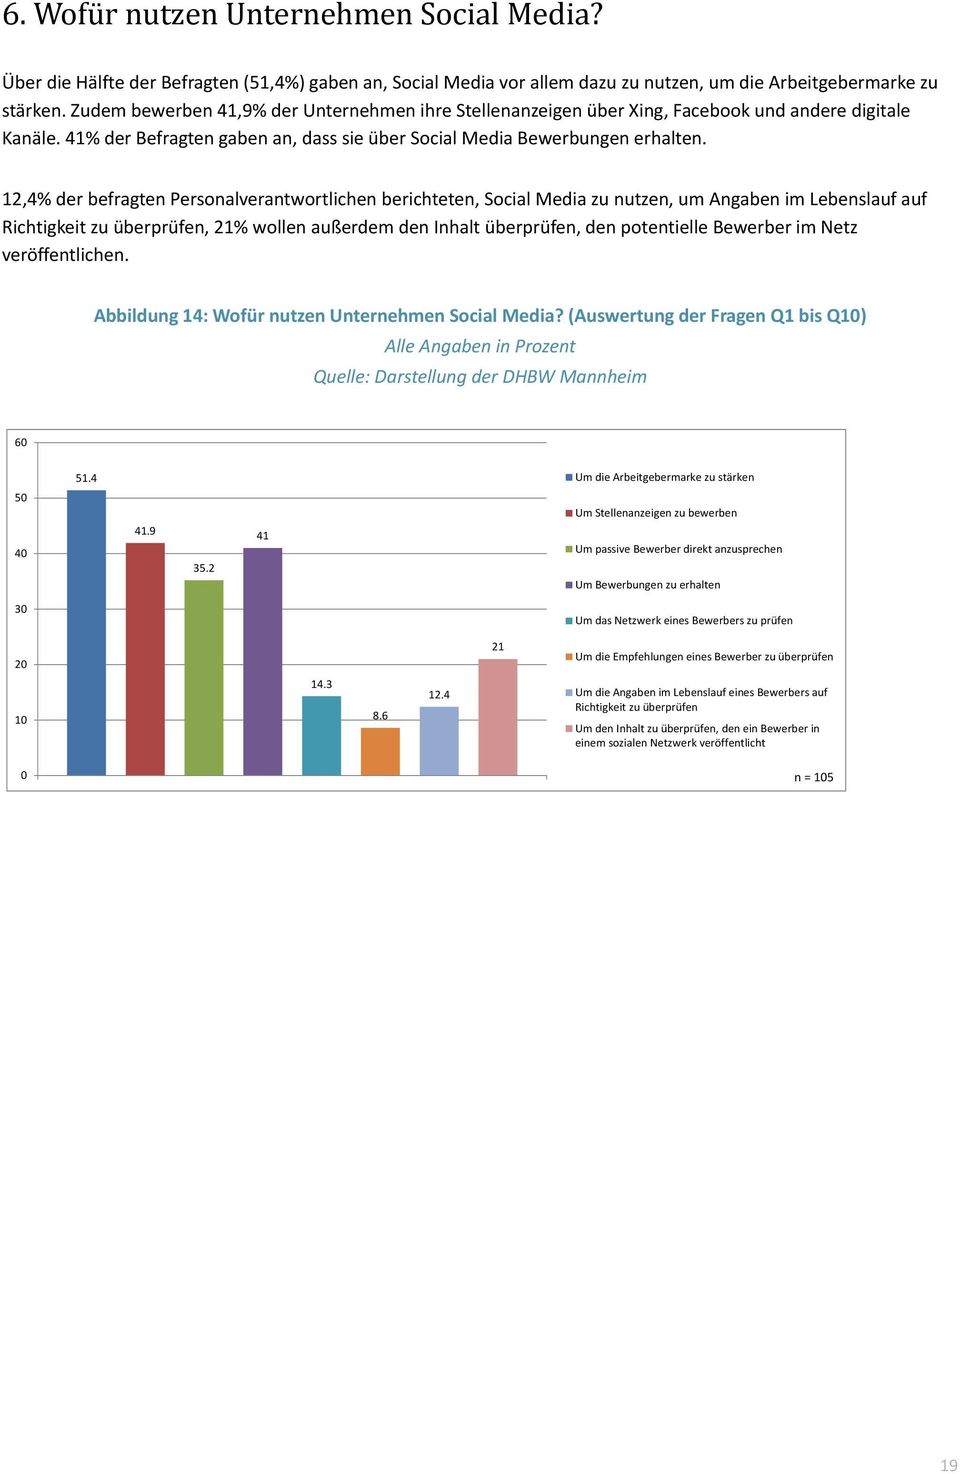 12,4% der befragten Personalverantwortlichen berichteten, Social Media zu nutzen, um Angaben im Lebenslauf auf Richtigkeit zu überprüfen, 21% wollen außerdem den Inhalt überprüfen, den potentielle